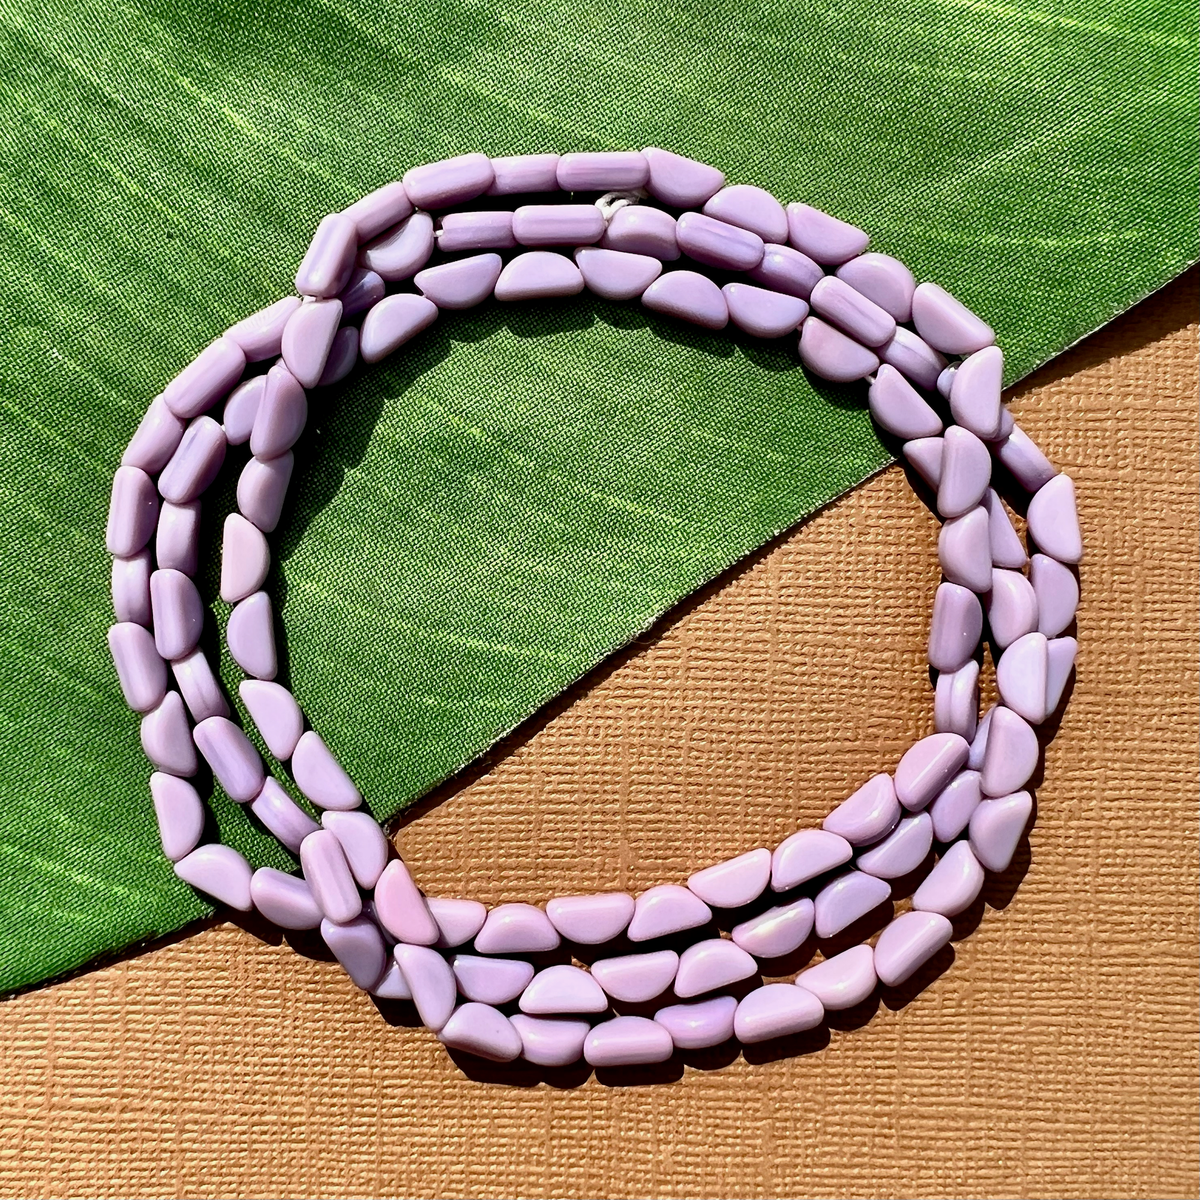 Lavender Glass Bead Pen - handmade lavender glass beads